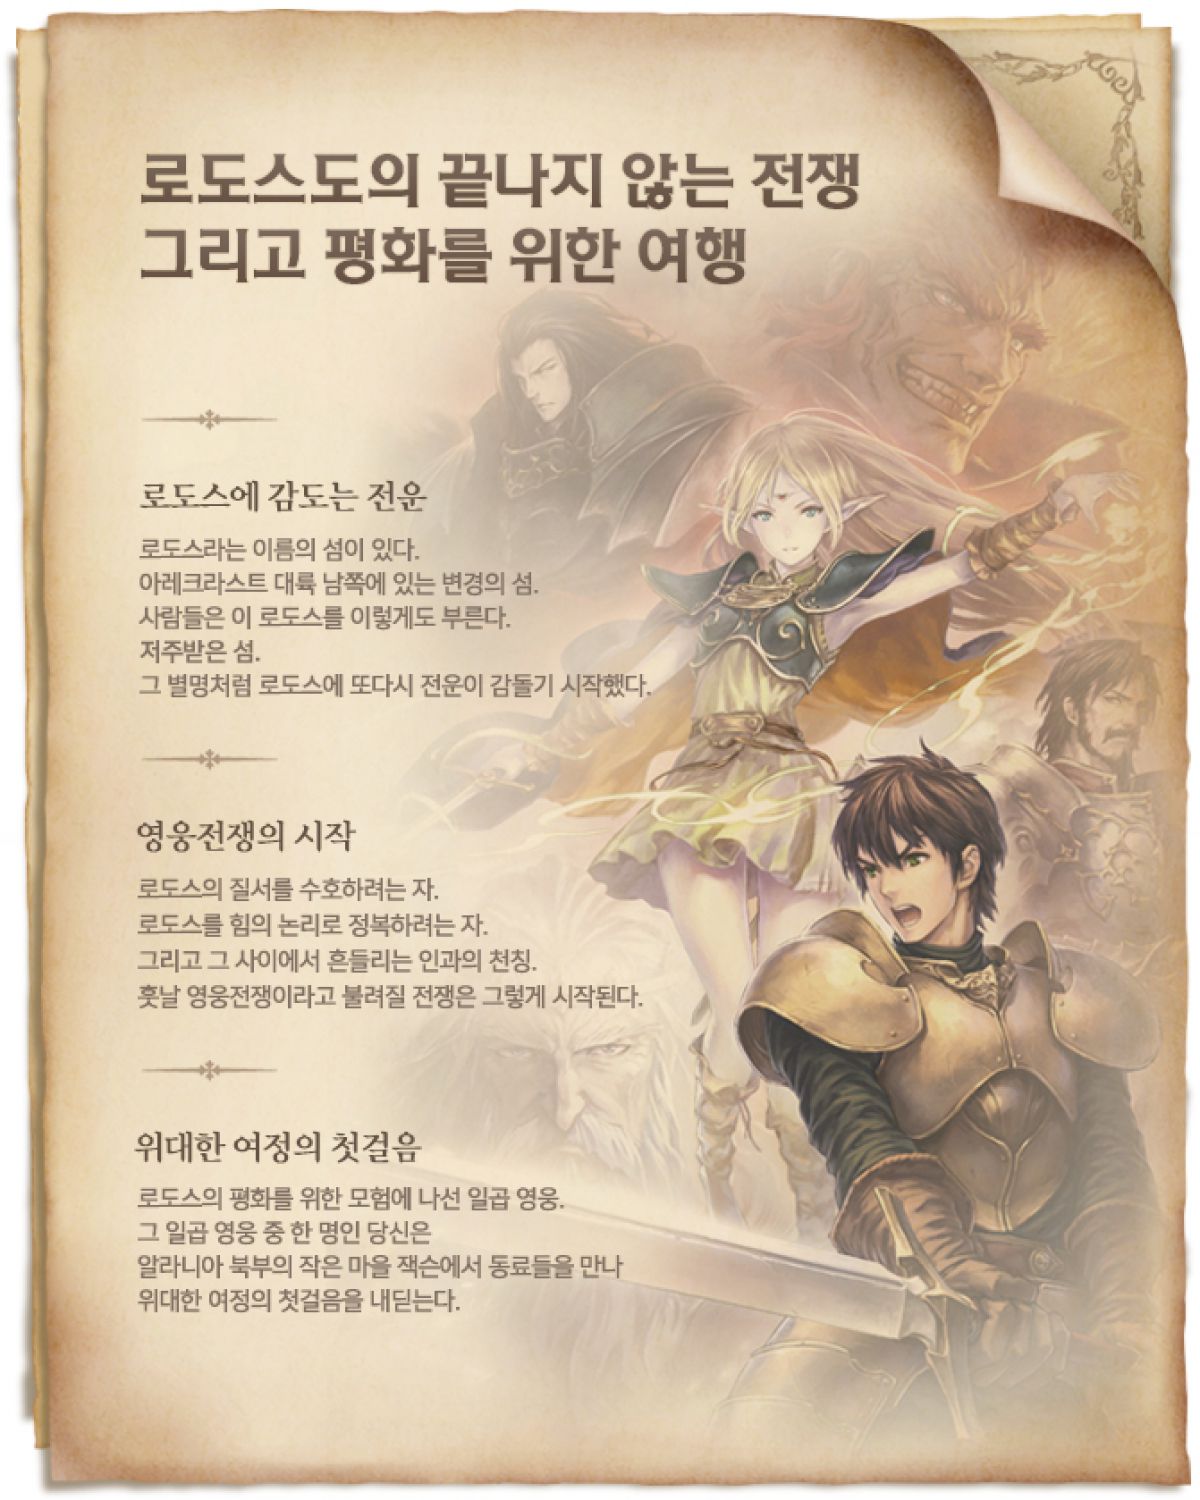 Первое корейское ЗБТ Record of Lodoss War Online пройдет в июне